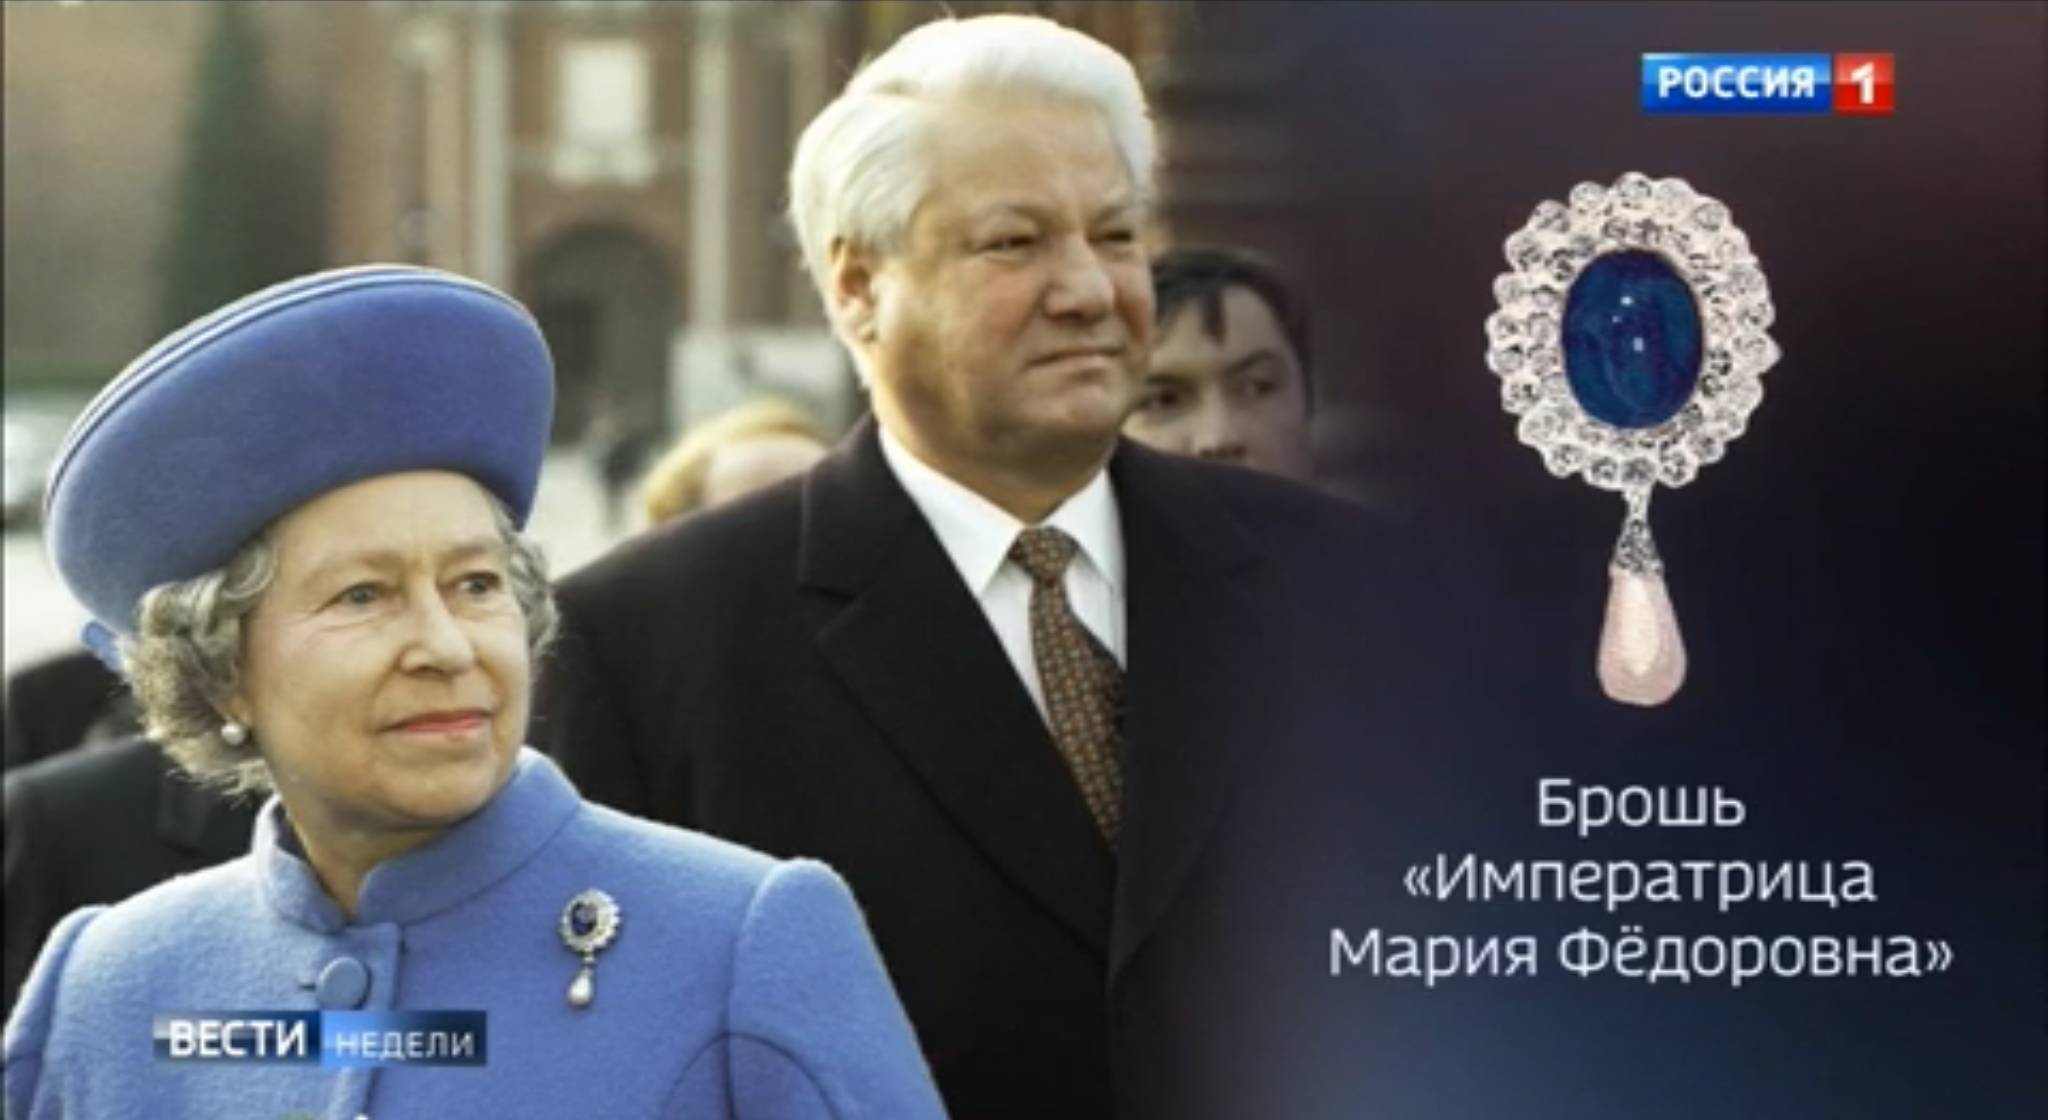 Elżnbieta II w niebieskim płaszczu z szafirową brosza, za nią Borys Jelcyn. Obok zdjęcie samej broszy z rosyjskim napise "Brosza "cesarzowa Maria Diodorowna"